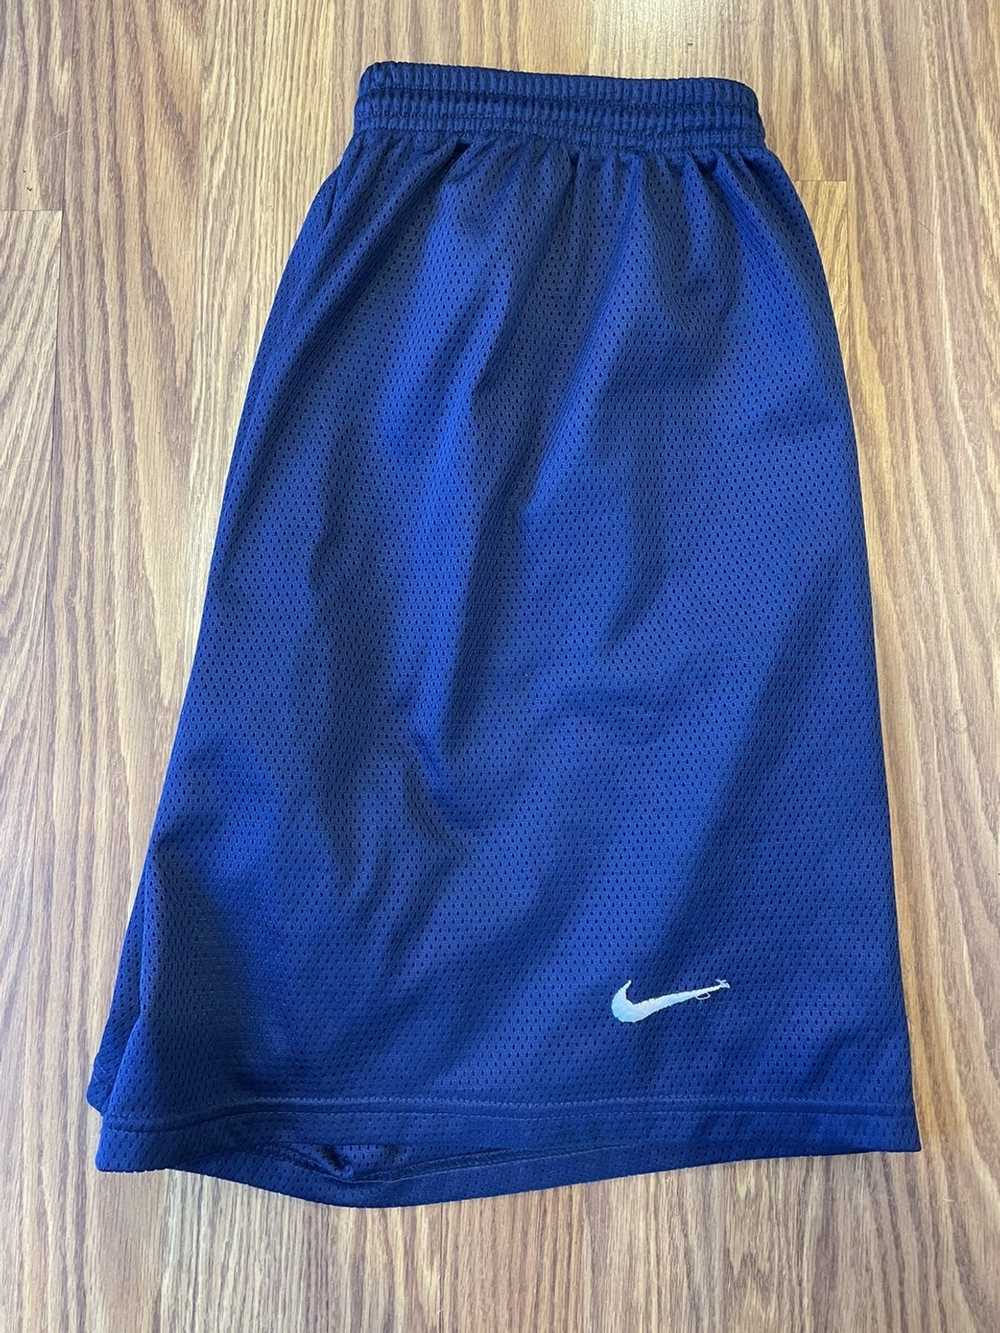 Nike Vintage 90s nike basketball shorts xl blue - image 1